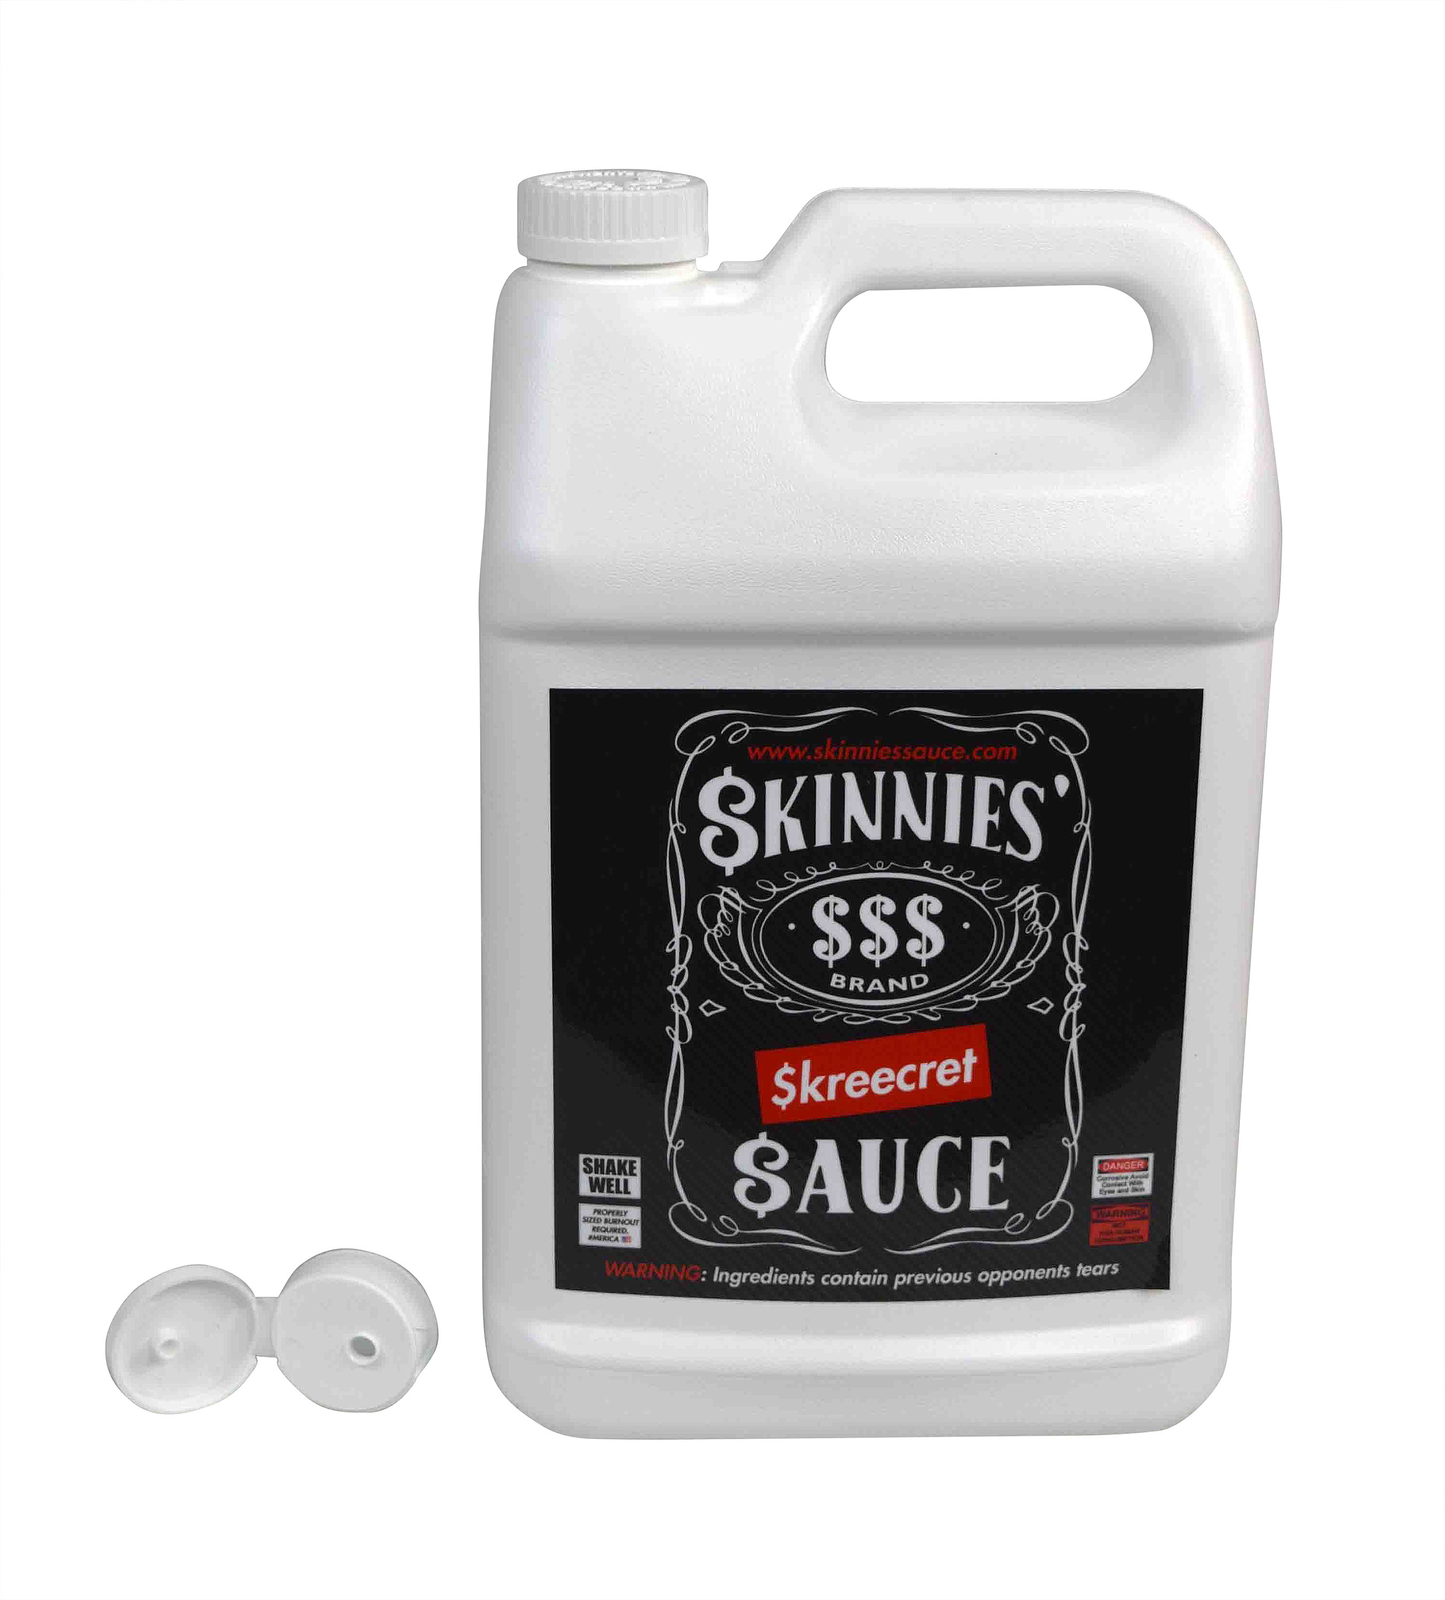 Skinnies Skreecret Sauce (8 jugs)